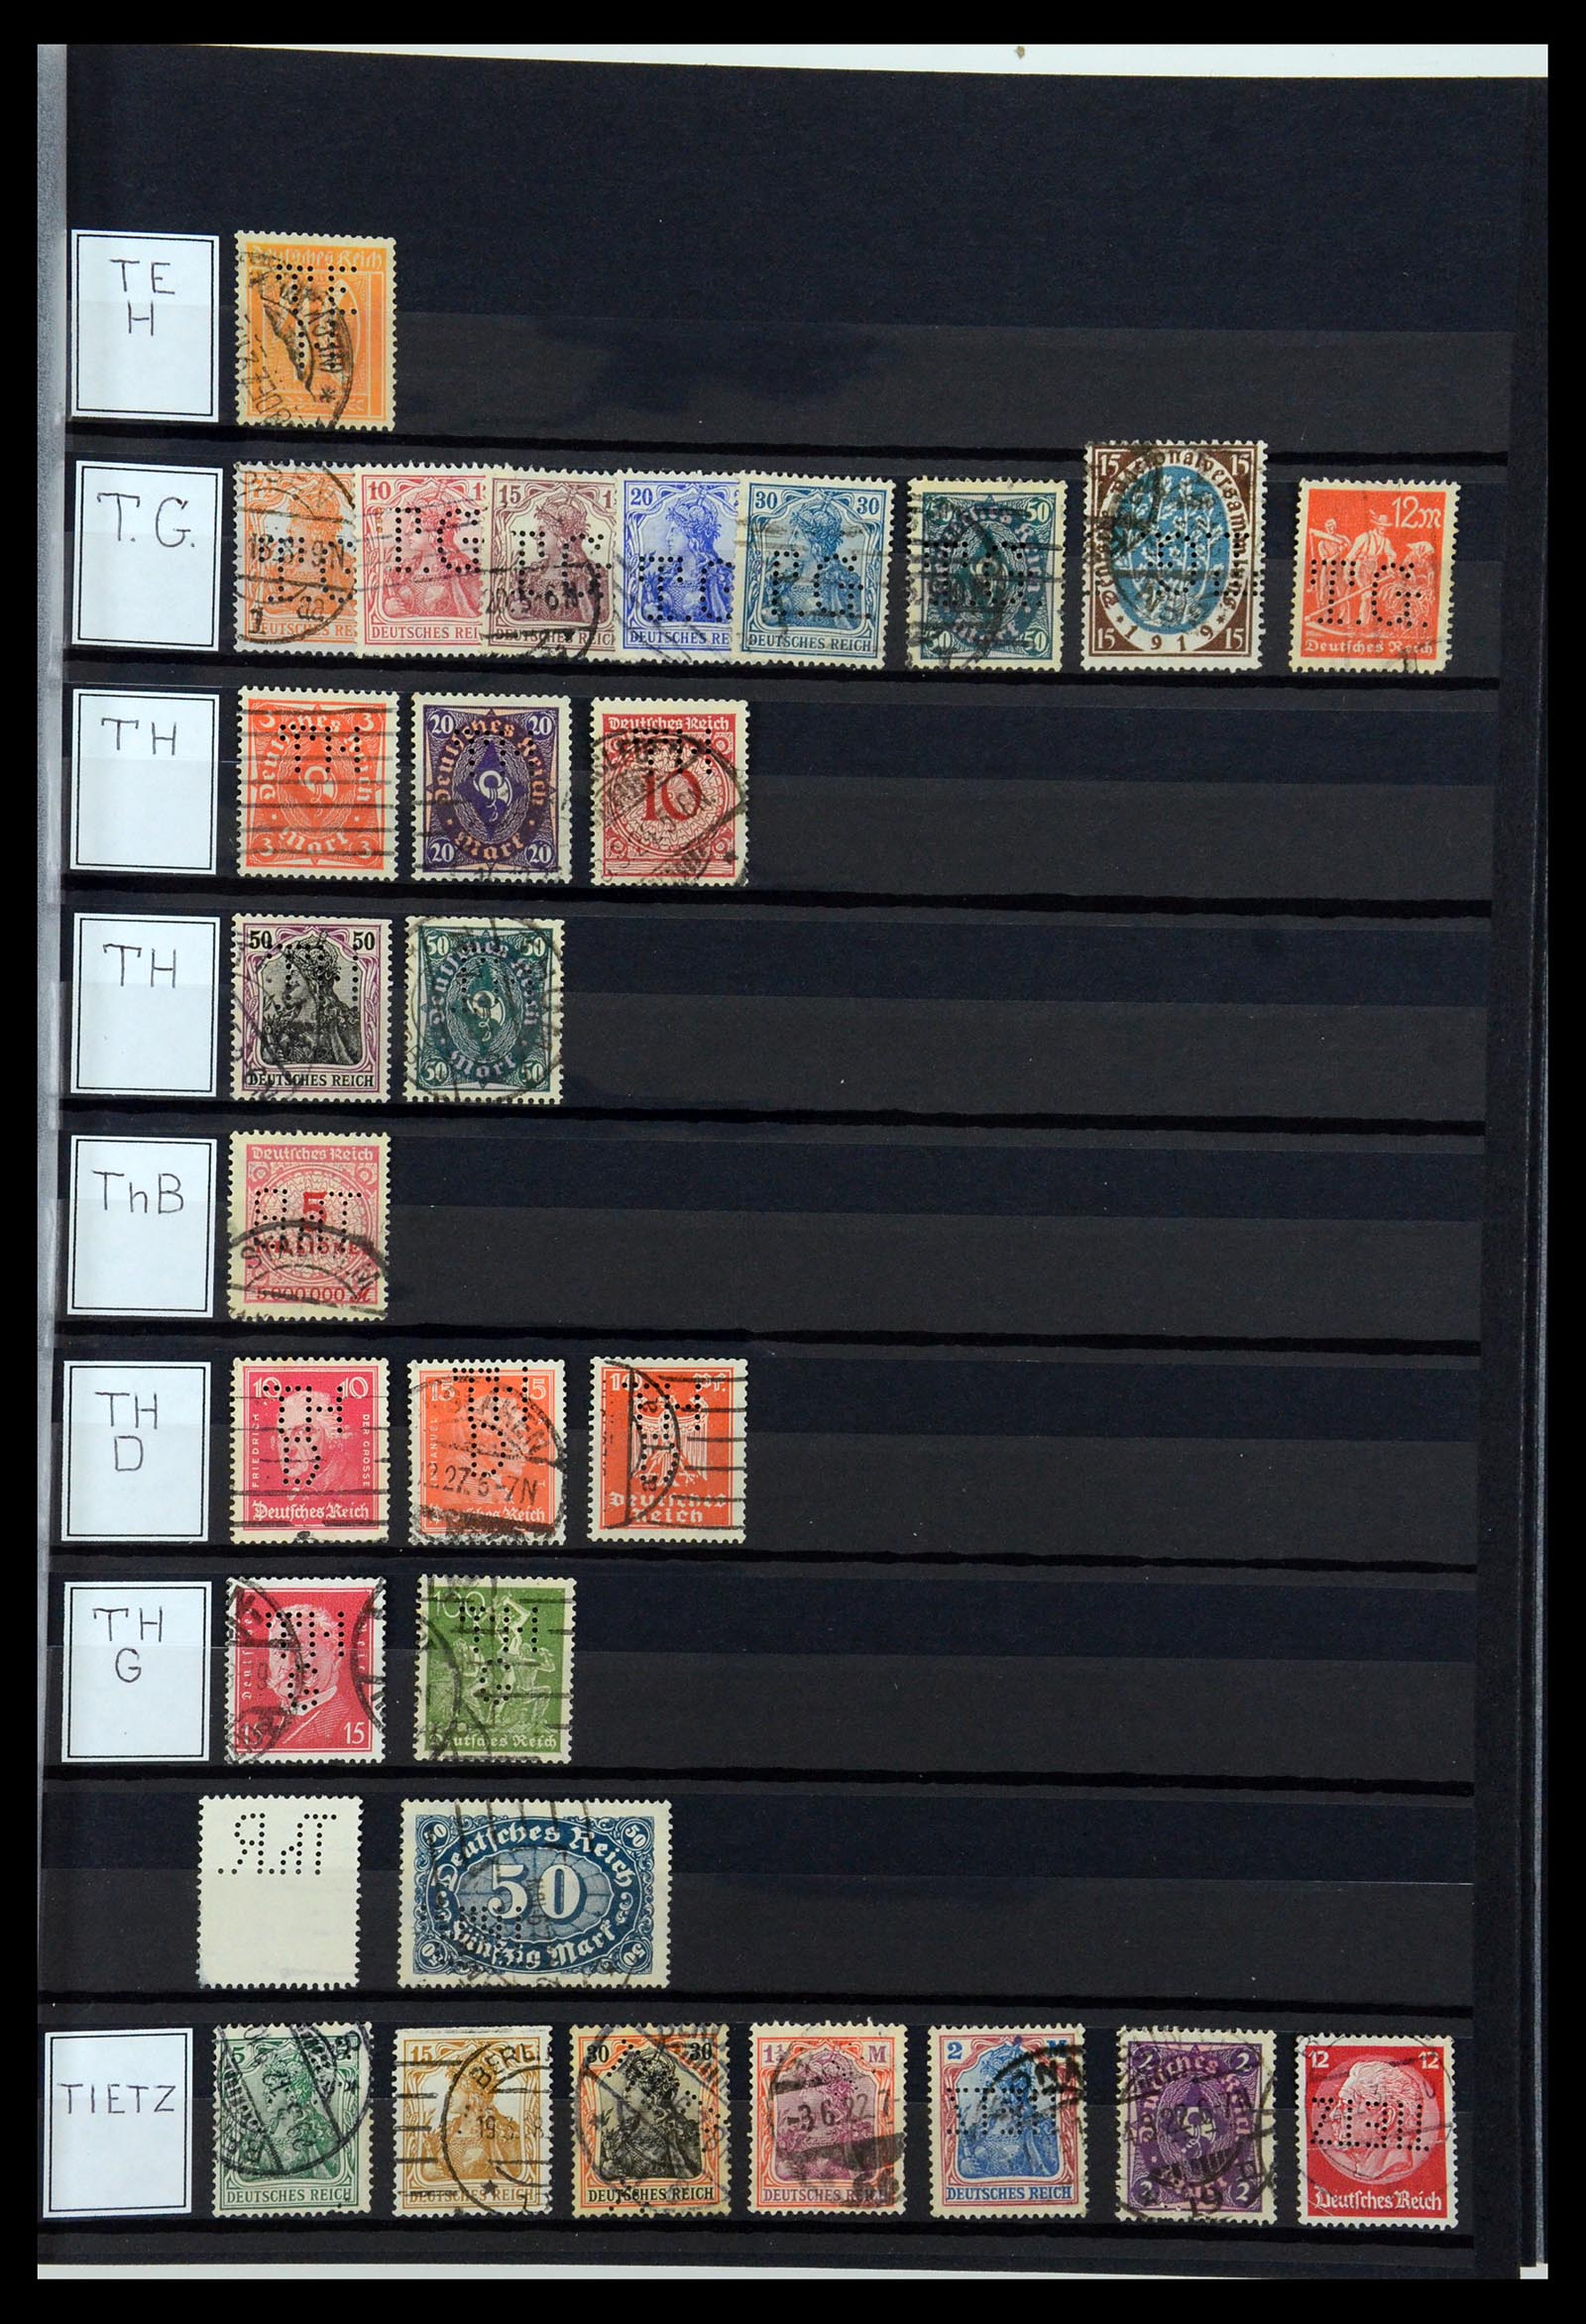 36405 312 - Stamp collection 36405 German Reich perfins 1880-1945.